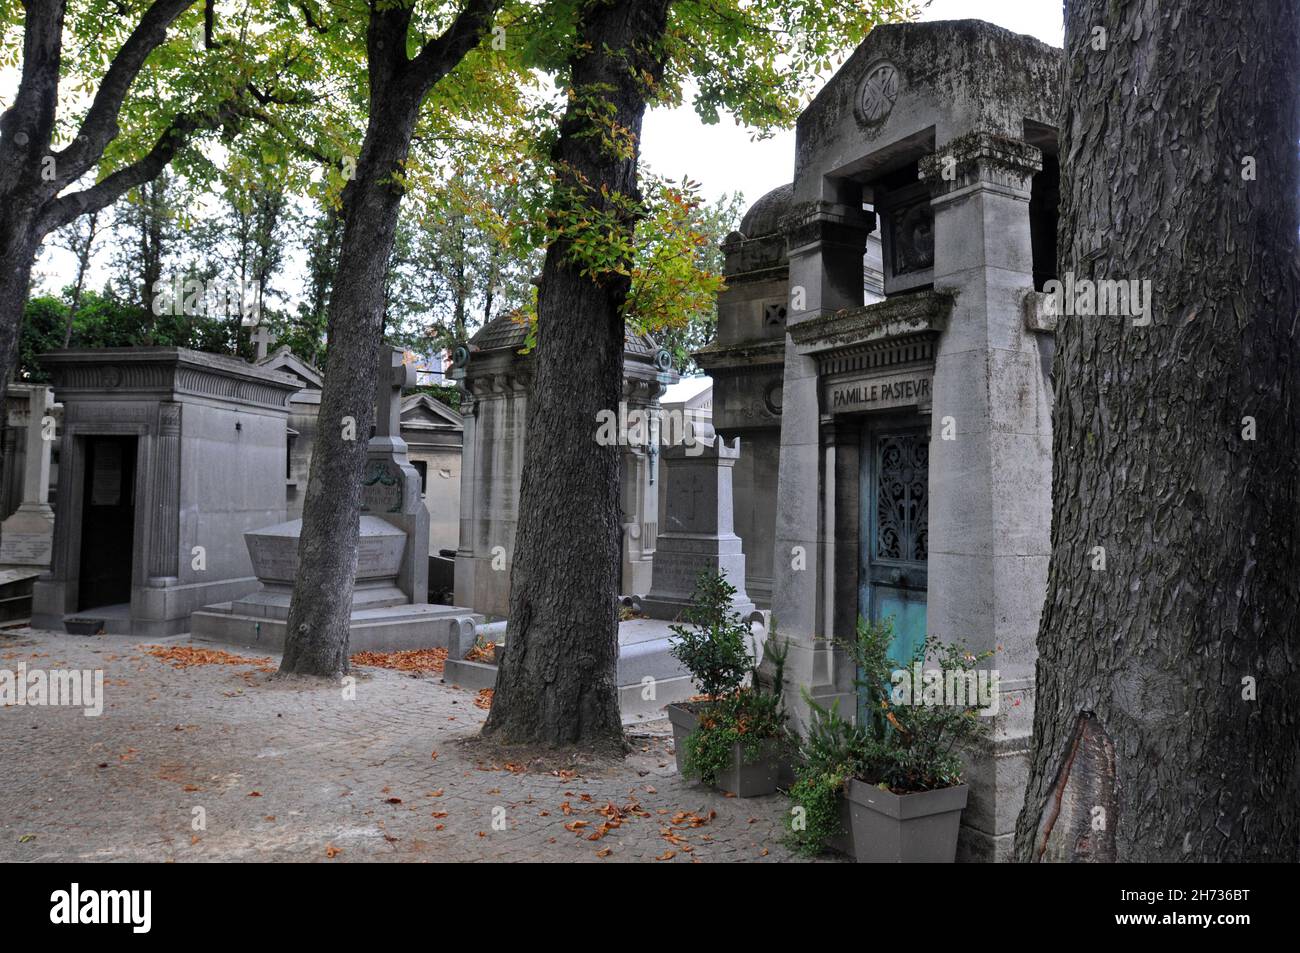 Des arbres et de grands mausolées bordent les chemins du cimetière historique de Passy (Cimetière de Passy) à Paris, qui a ouvert ses portes en 1820. Banque D'Images